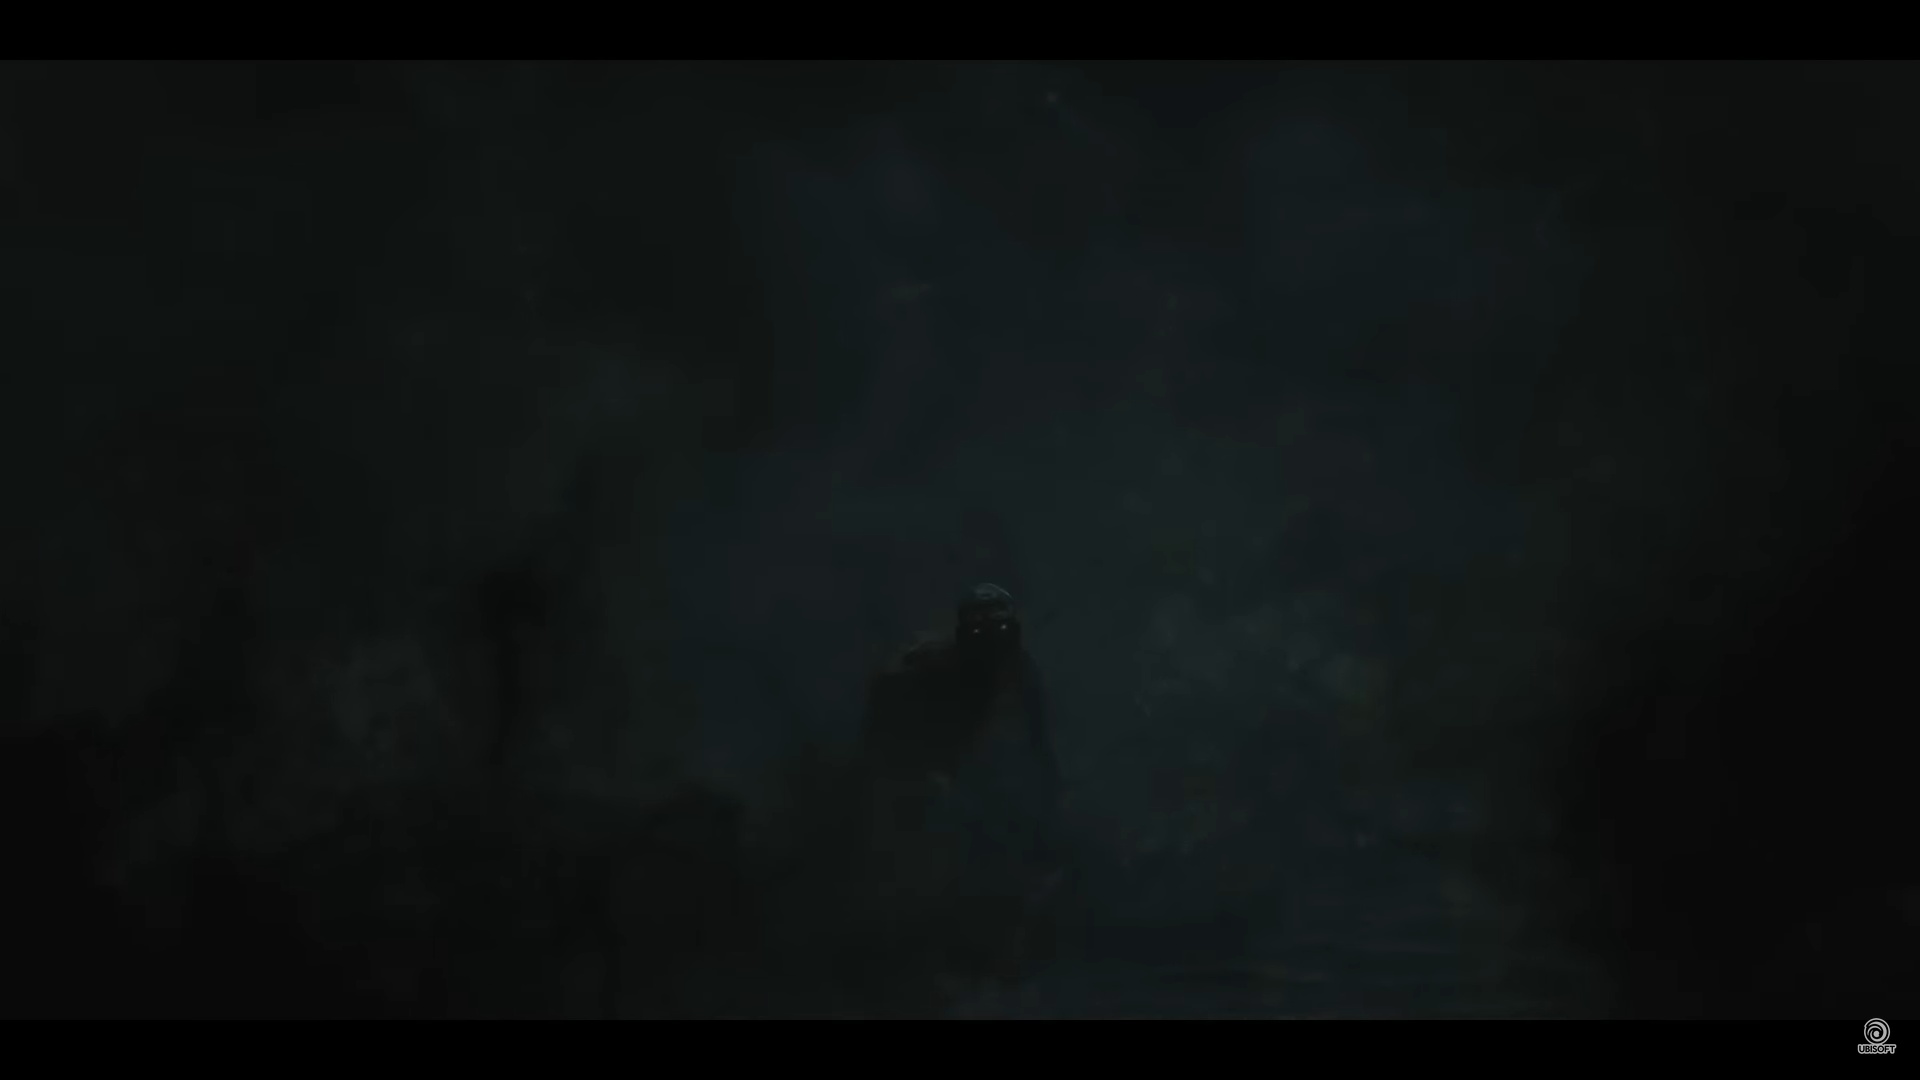 (In een voor Assassin's Creed typische moordsequentie verschijnt een donker schimmig wezen voor Basim in de trailer voor Mirage. Dat dit Loki is, is in ieder geval niet onwaarschijnlijk.)